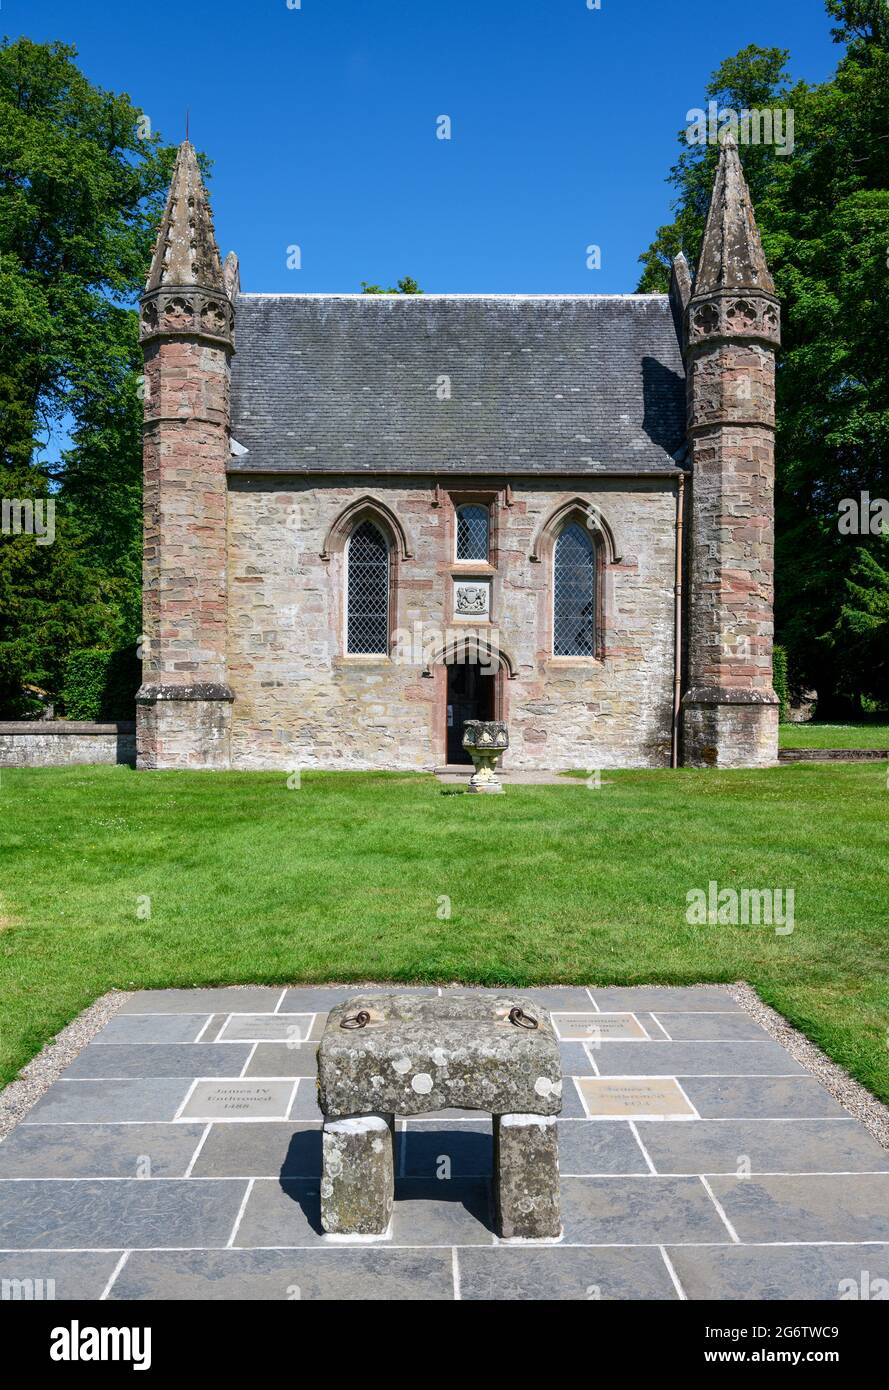 Die Kapelle auf Moot Hill mit einer Nachbildung des Steins von Scone vor dem Gebäude, Scone Palace, Perth, Schottland, Großbritannien Stockfoto